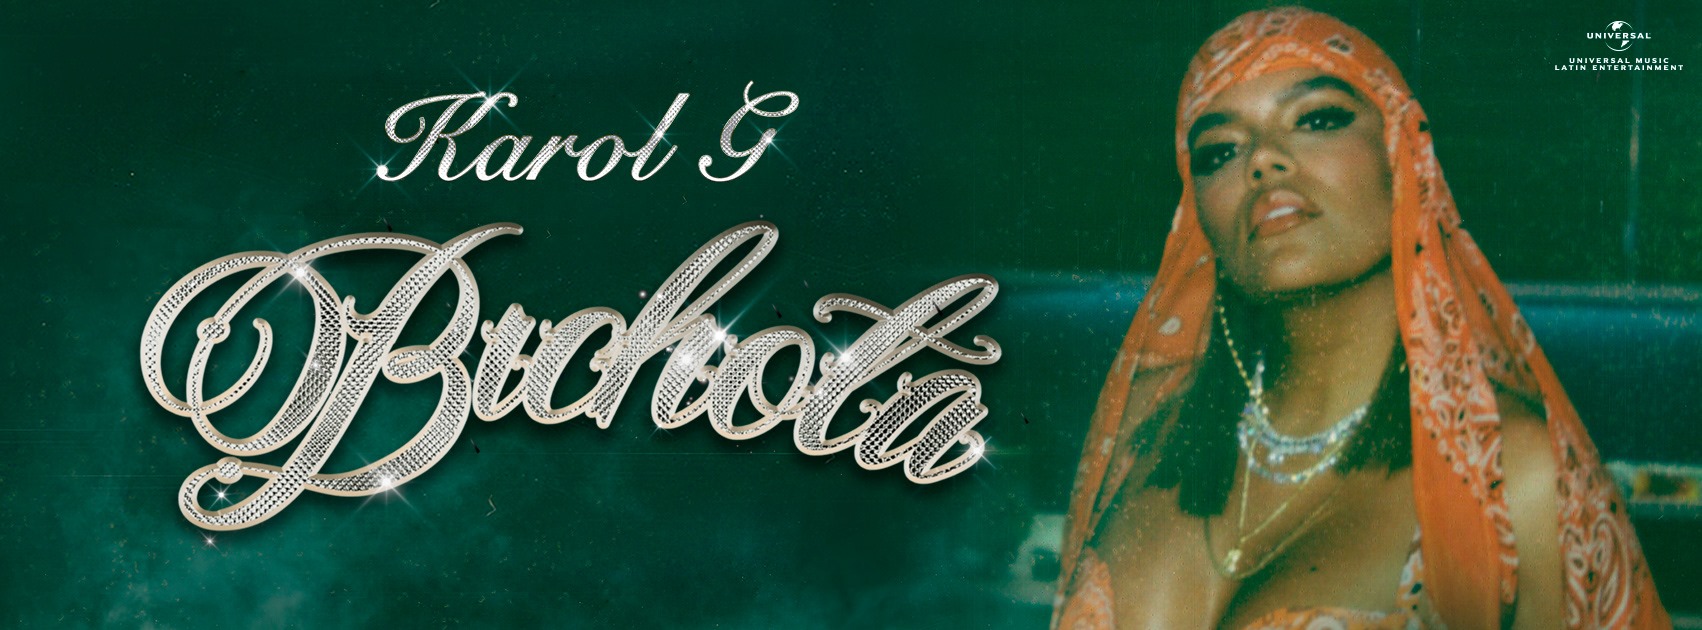 Karol G lanza hoy viernes 23 de octubre a nivel mundial “Bichota”, su nuevo sencillo